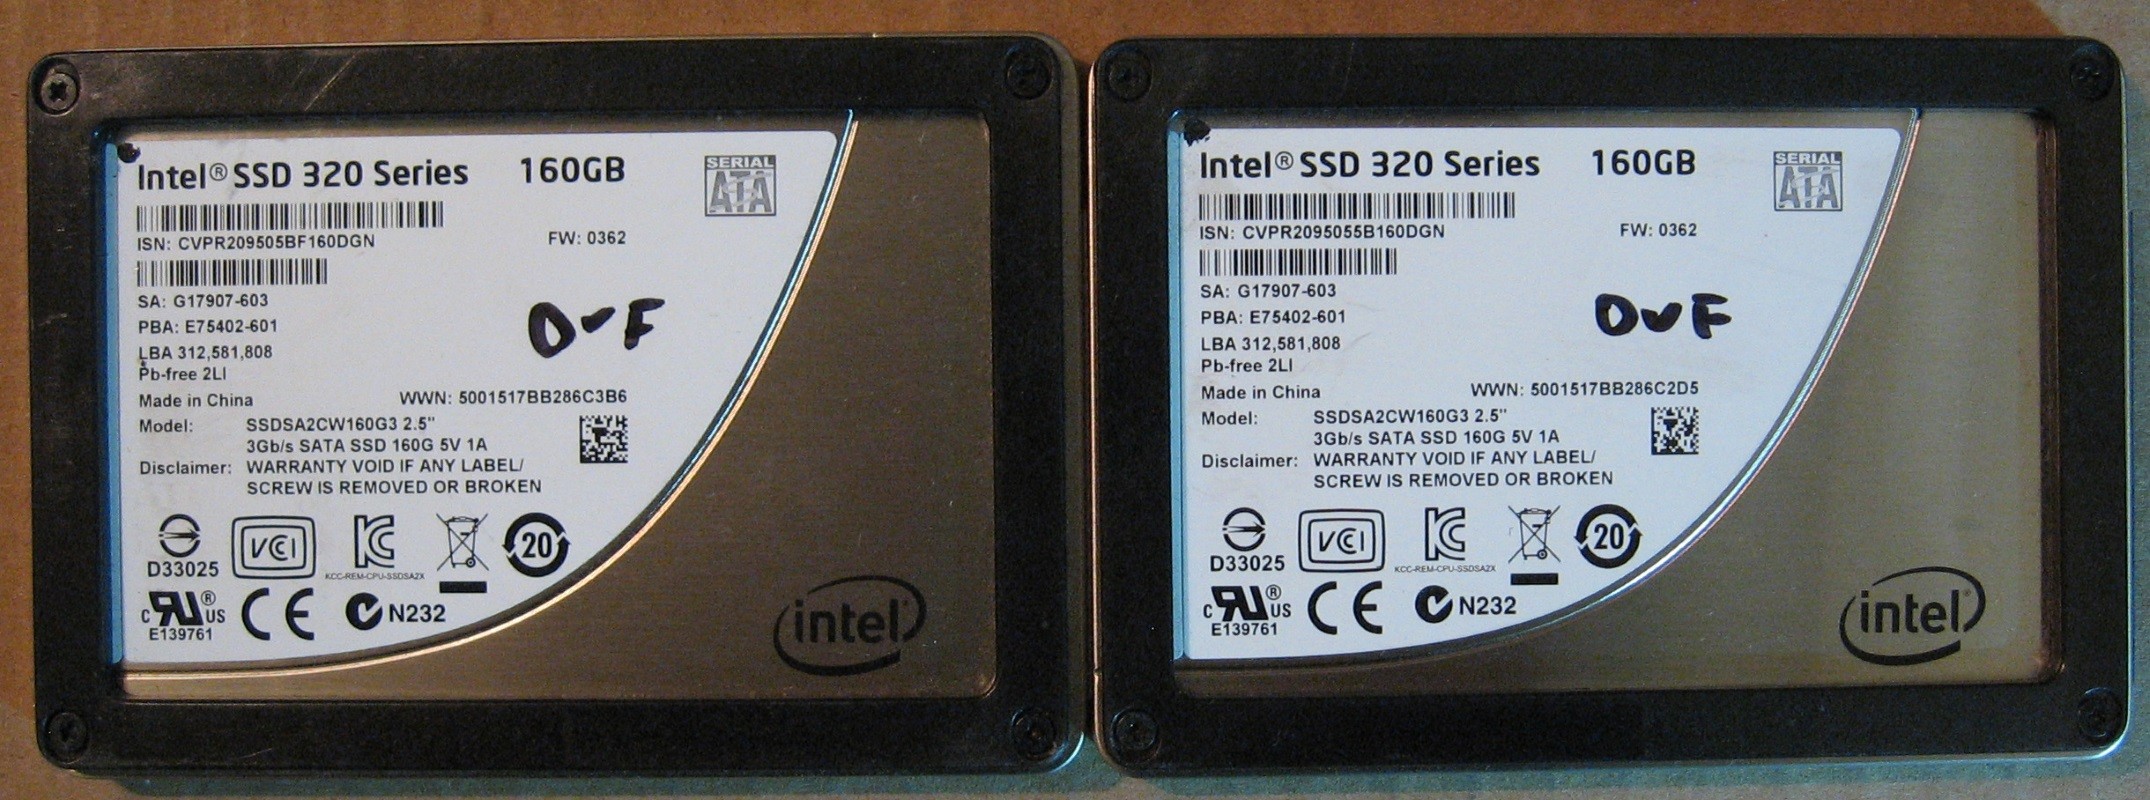 160GB SSD Lot of 2 Intel 1979